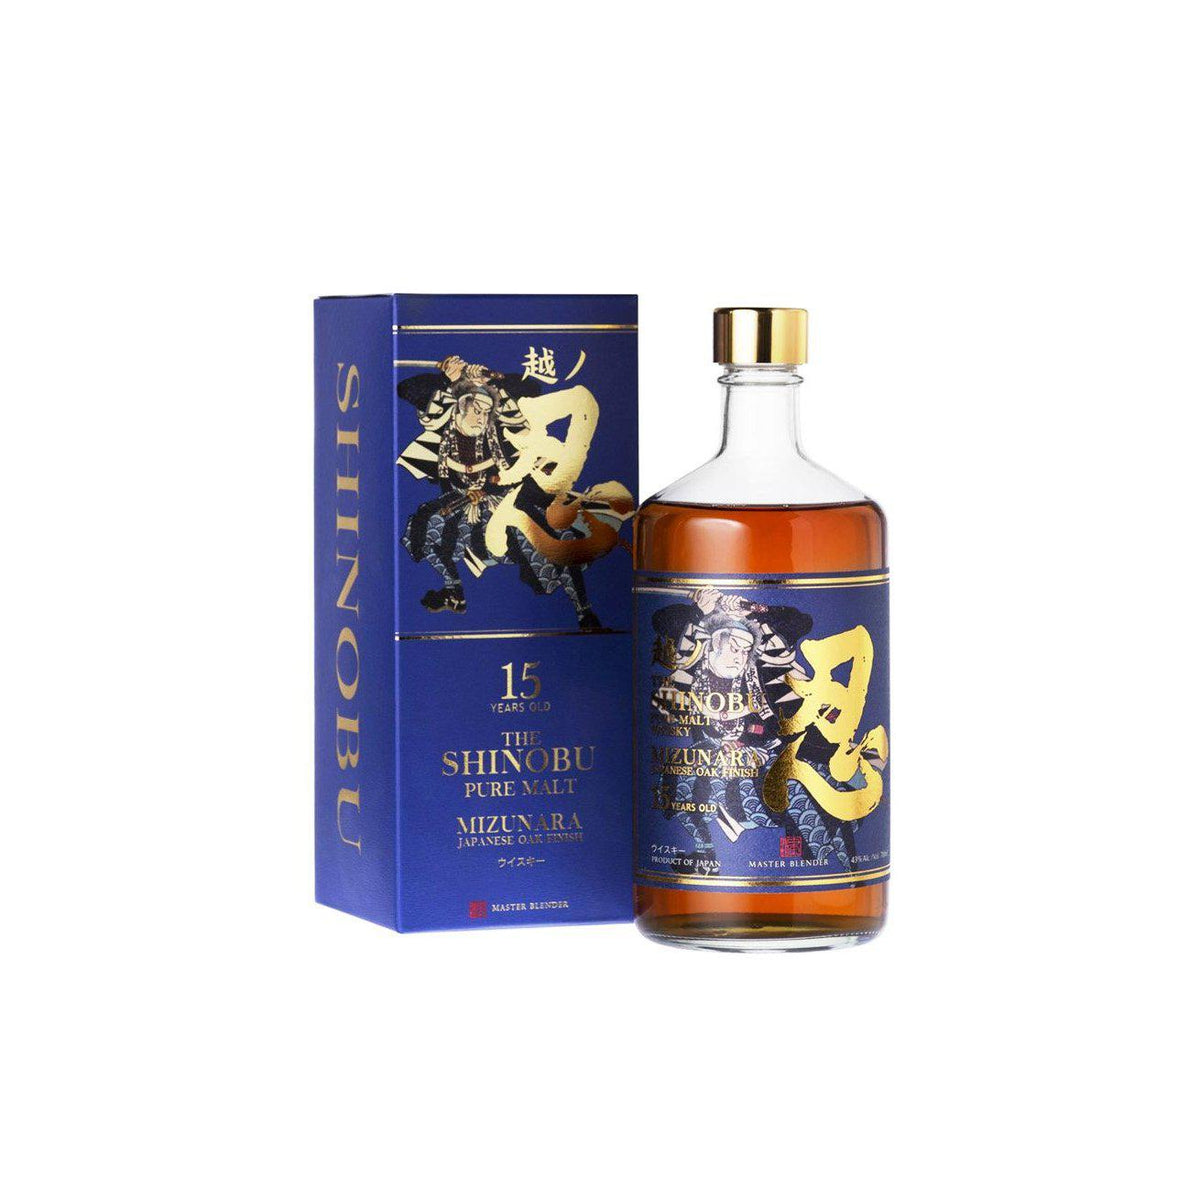 The Shinobu 15 Years Mizunara Oak Finish Japanese Whisky 700ml